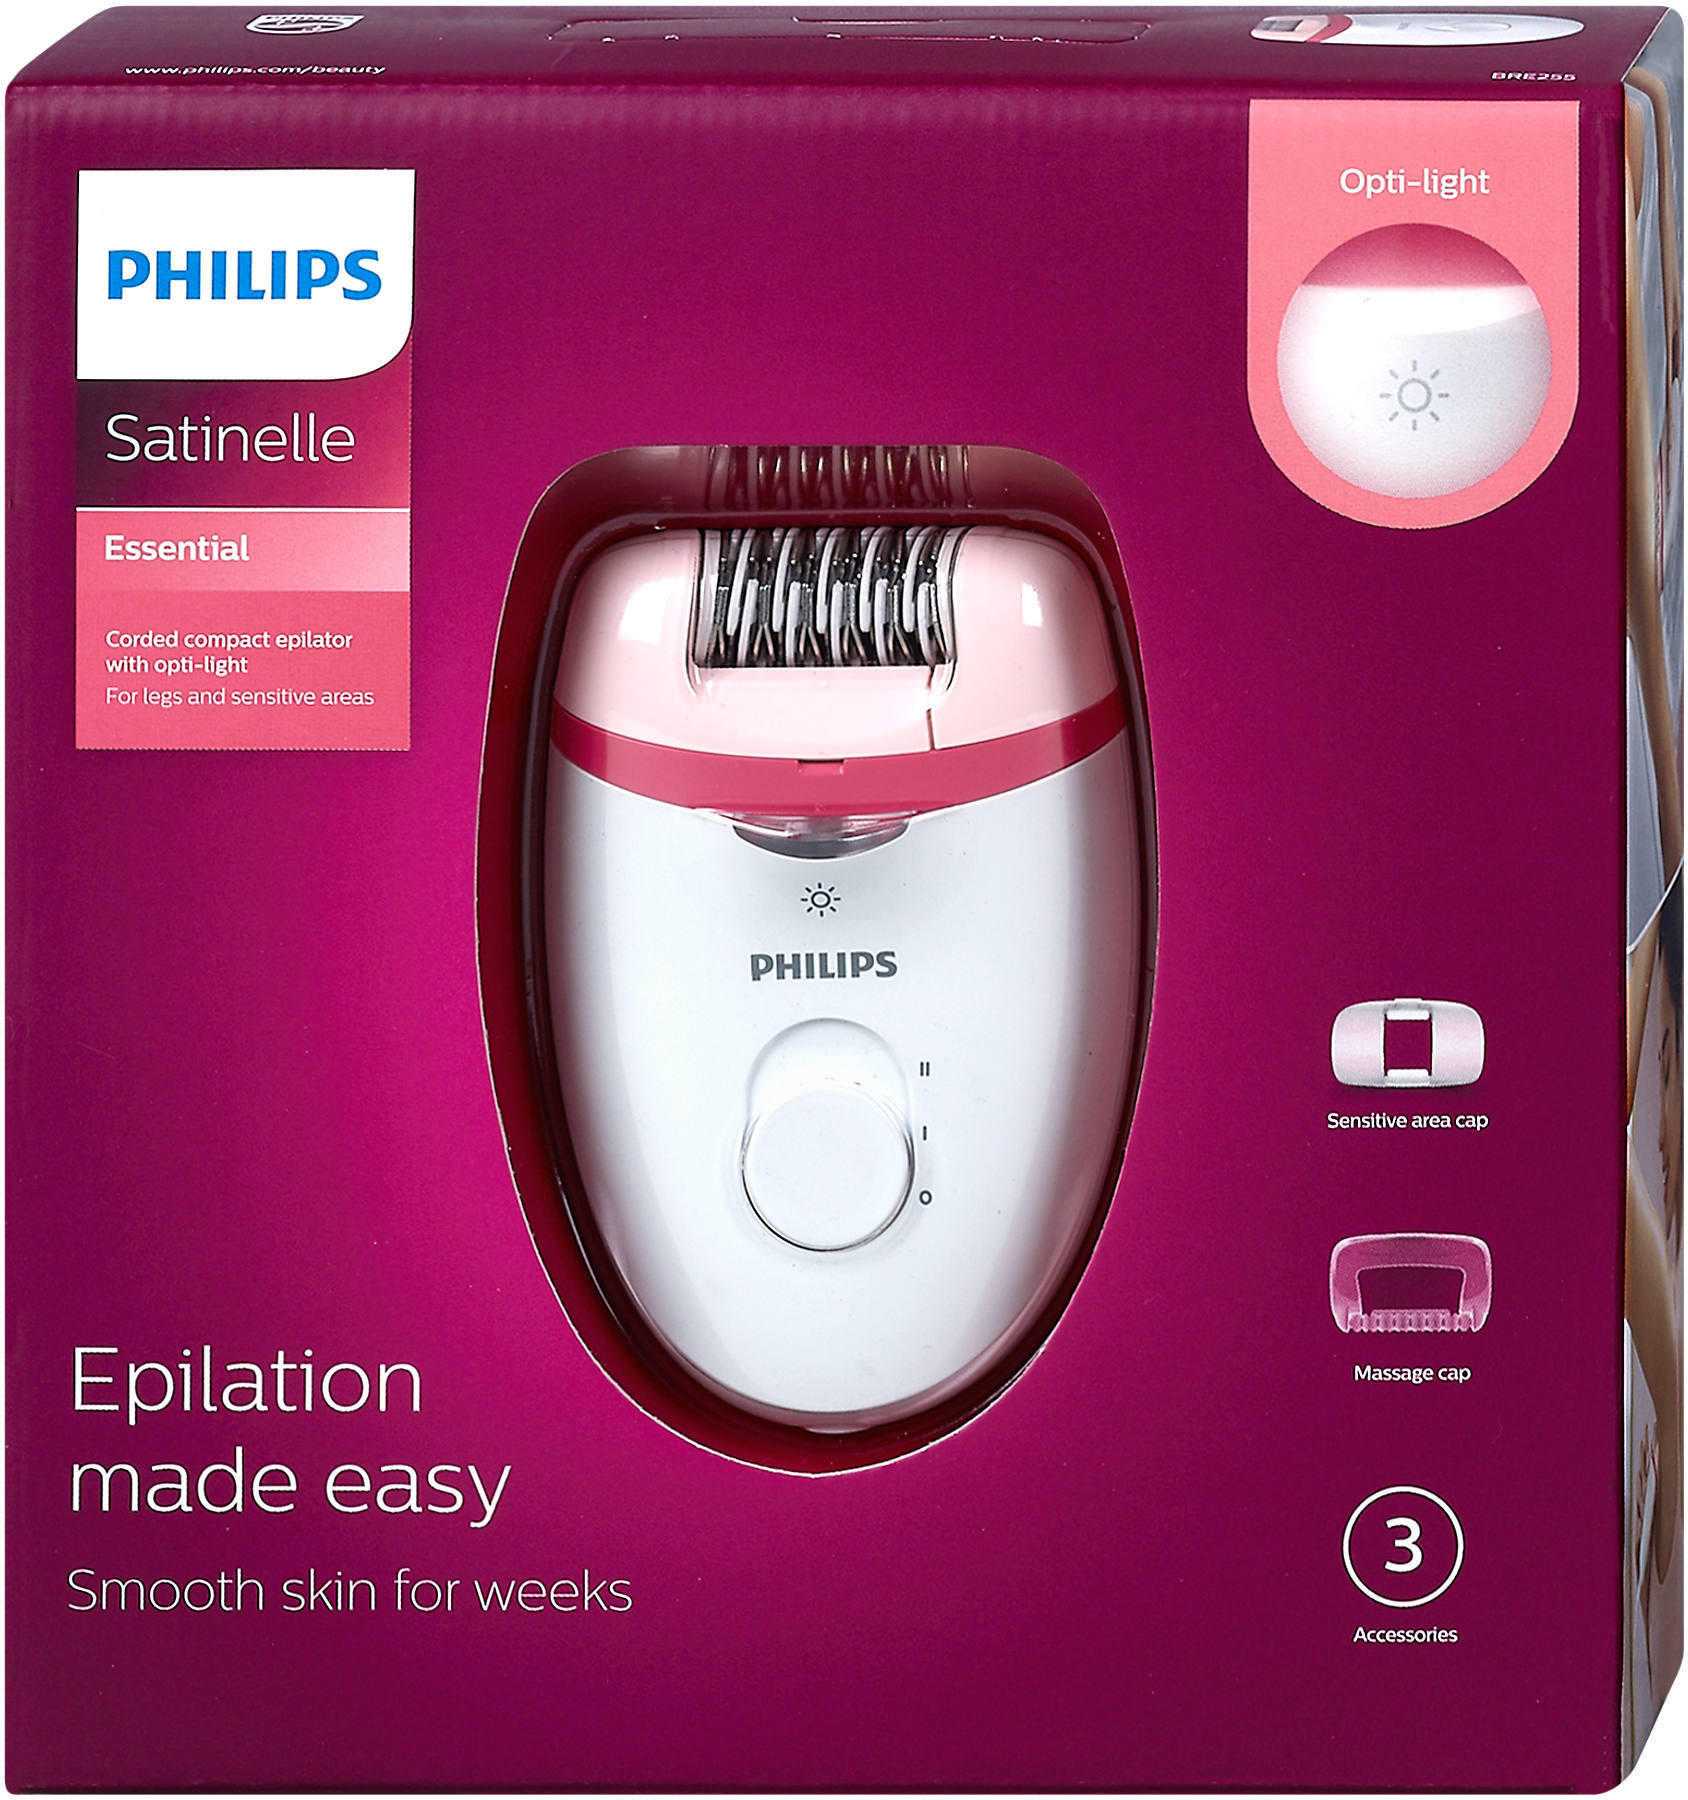 Philips satinelle essential brp529/00 отзывы